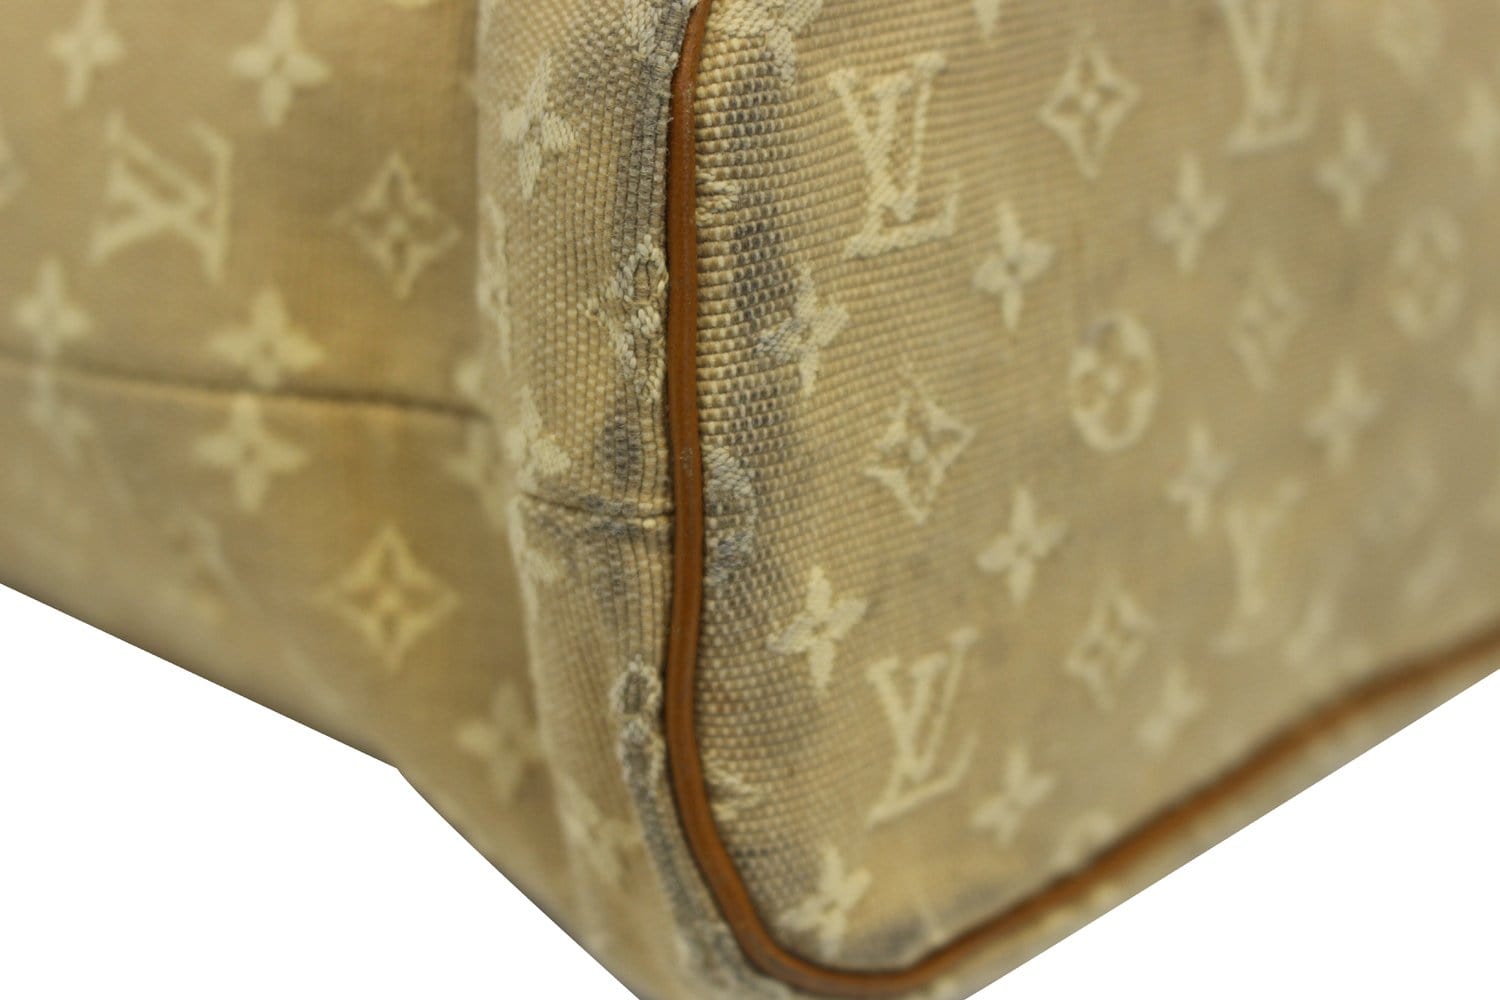 $1300 Louis Vuitton Mini Lin Monogram Red Cherise Lucille GM Shoulder Bag Tote  Purse - Lust4Labels